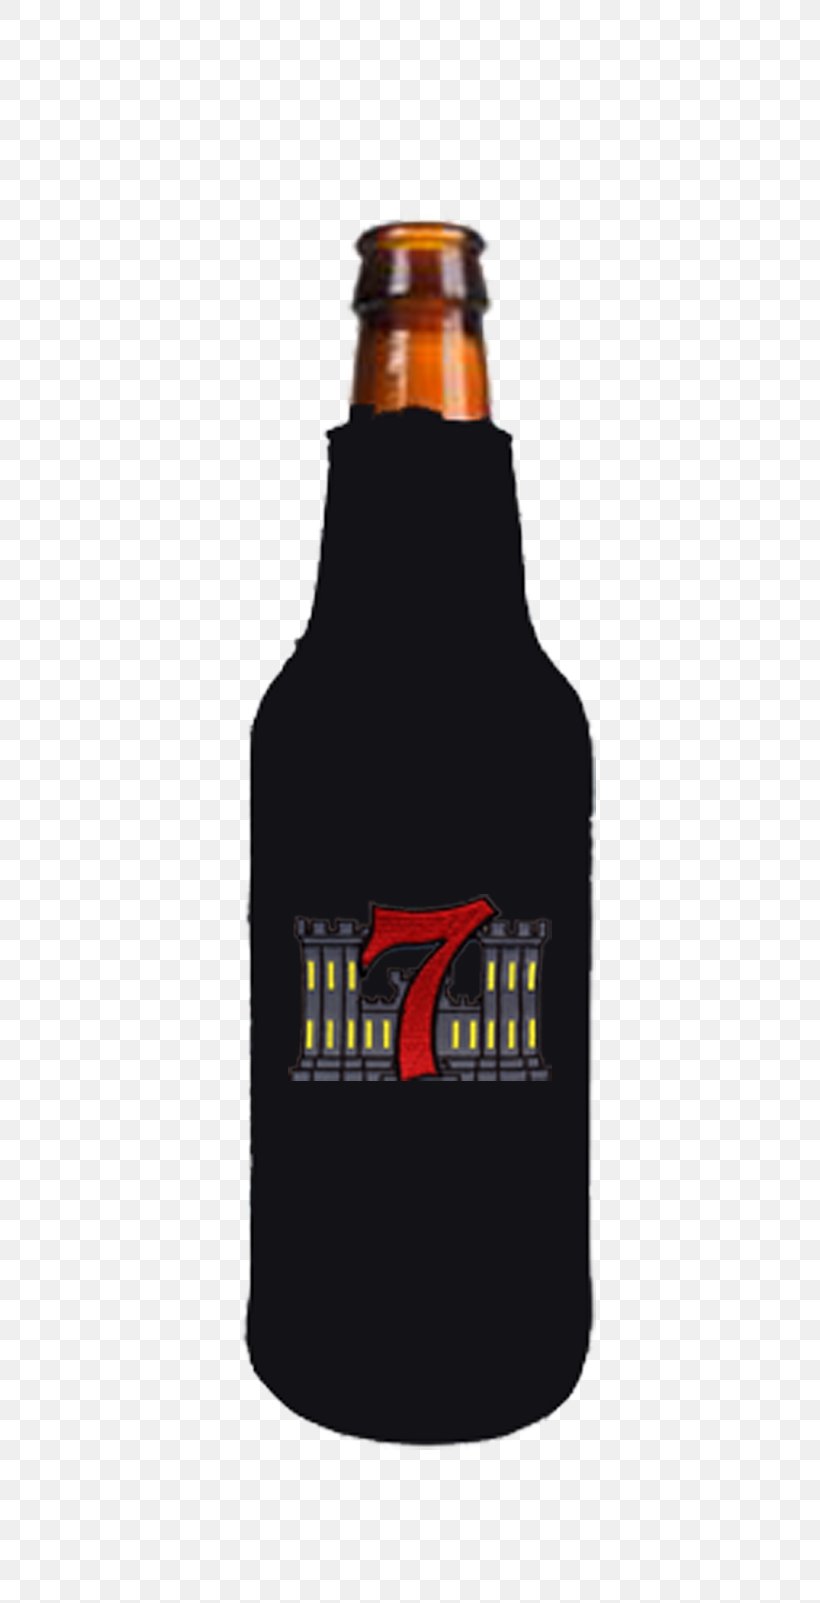 Beer Bottle Glass Bottle, PNG, 500x1603px, Beer, Beer Bottle, Bottle, Drink, Drinkware Download Free